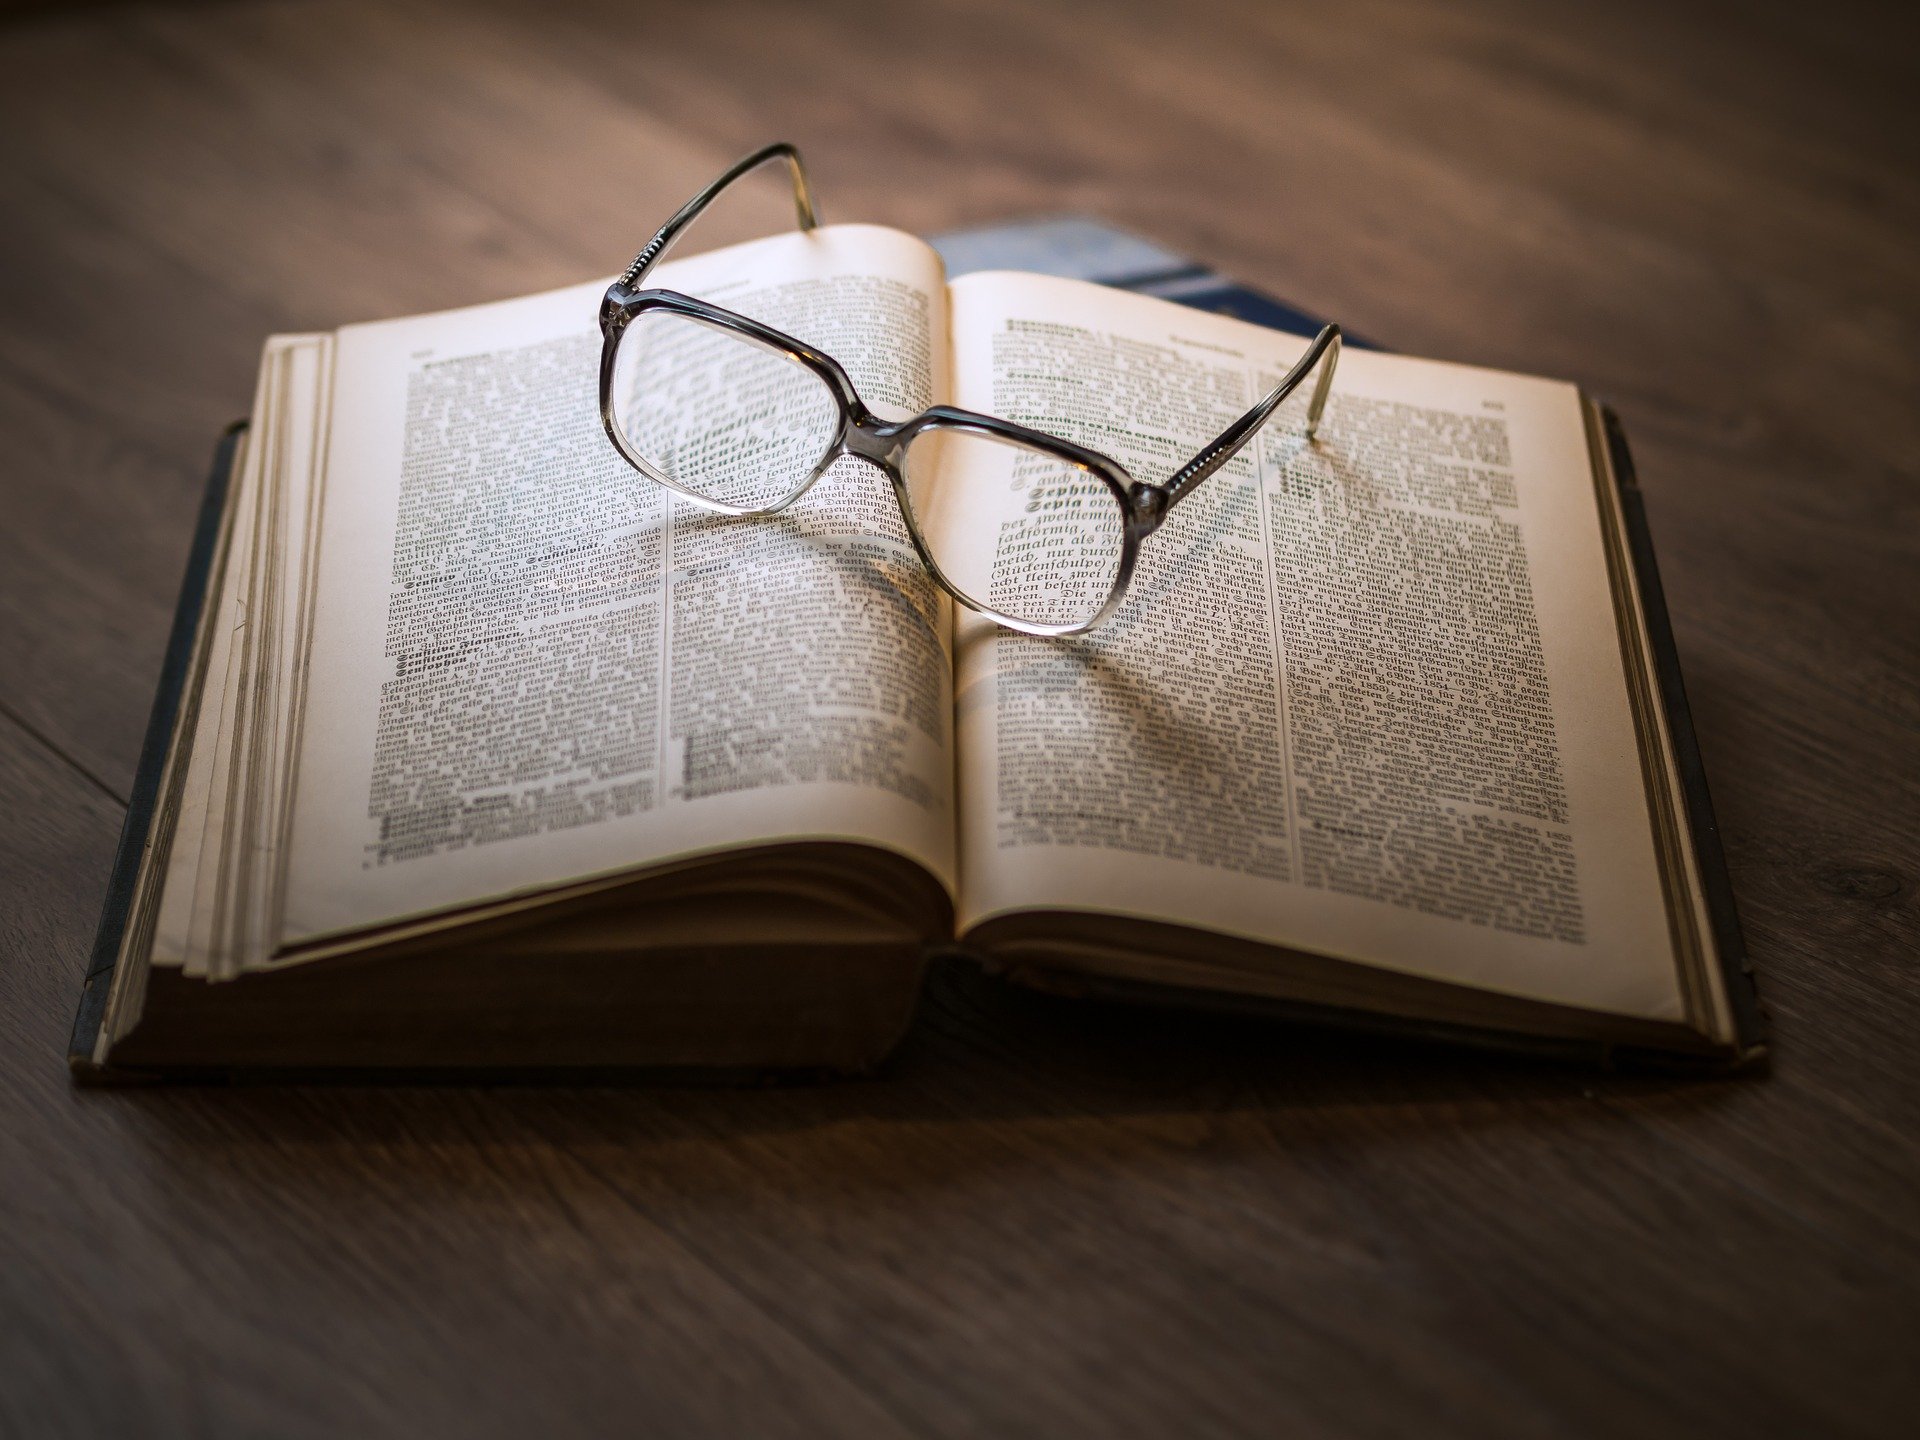 מה המשותף למשקפיים, לחומוס ולחינוך? – שבוע 233